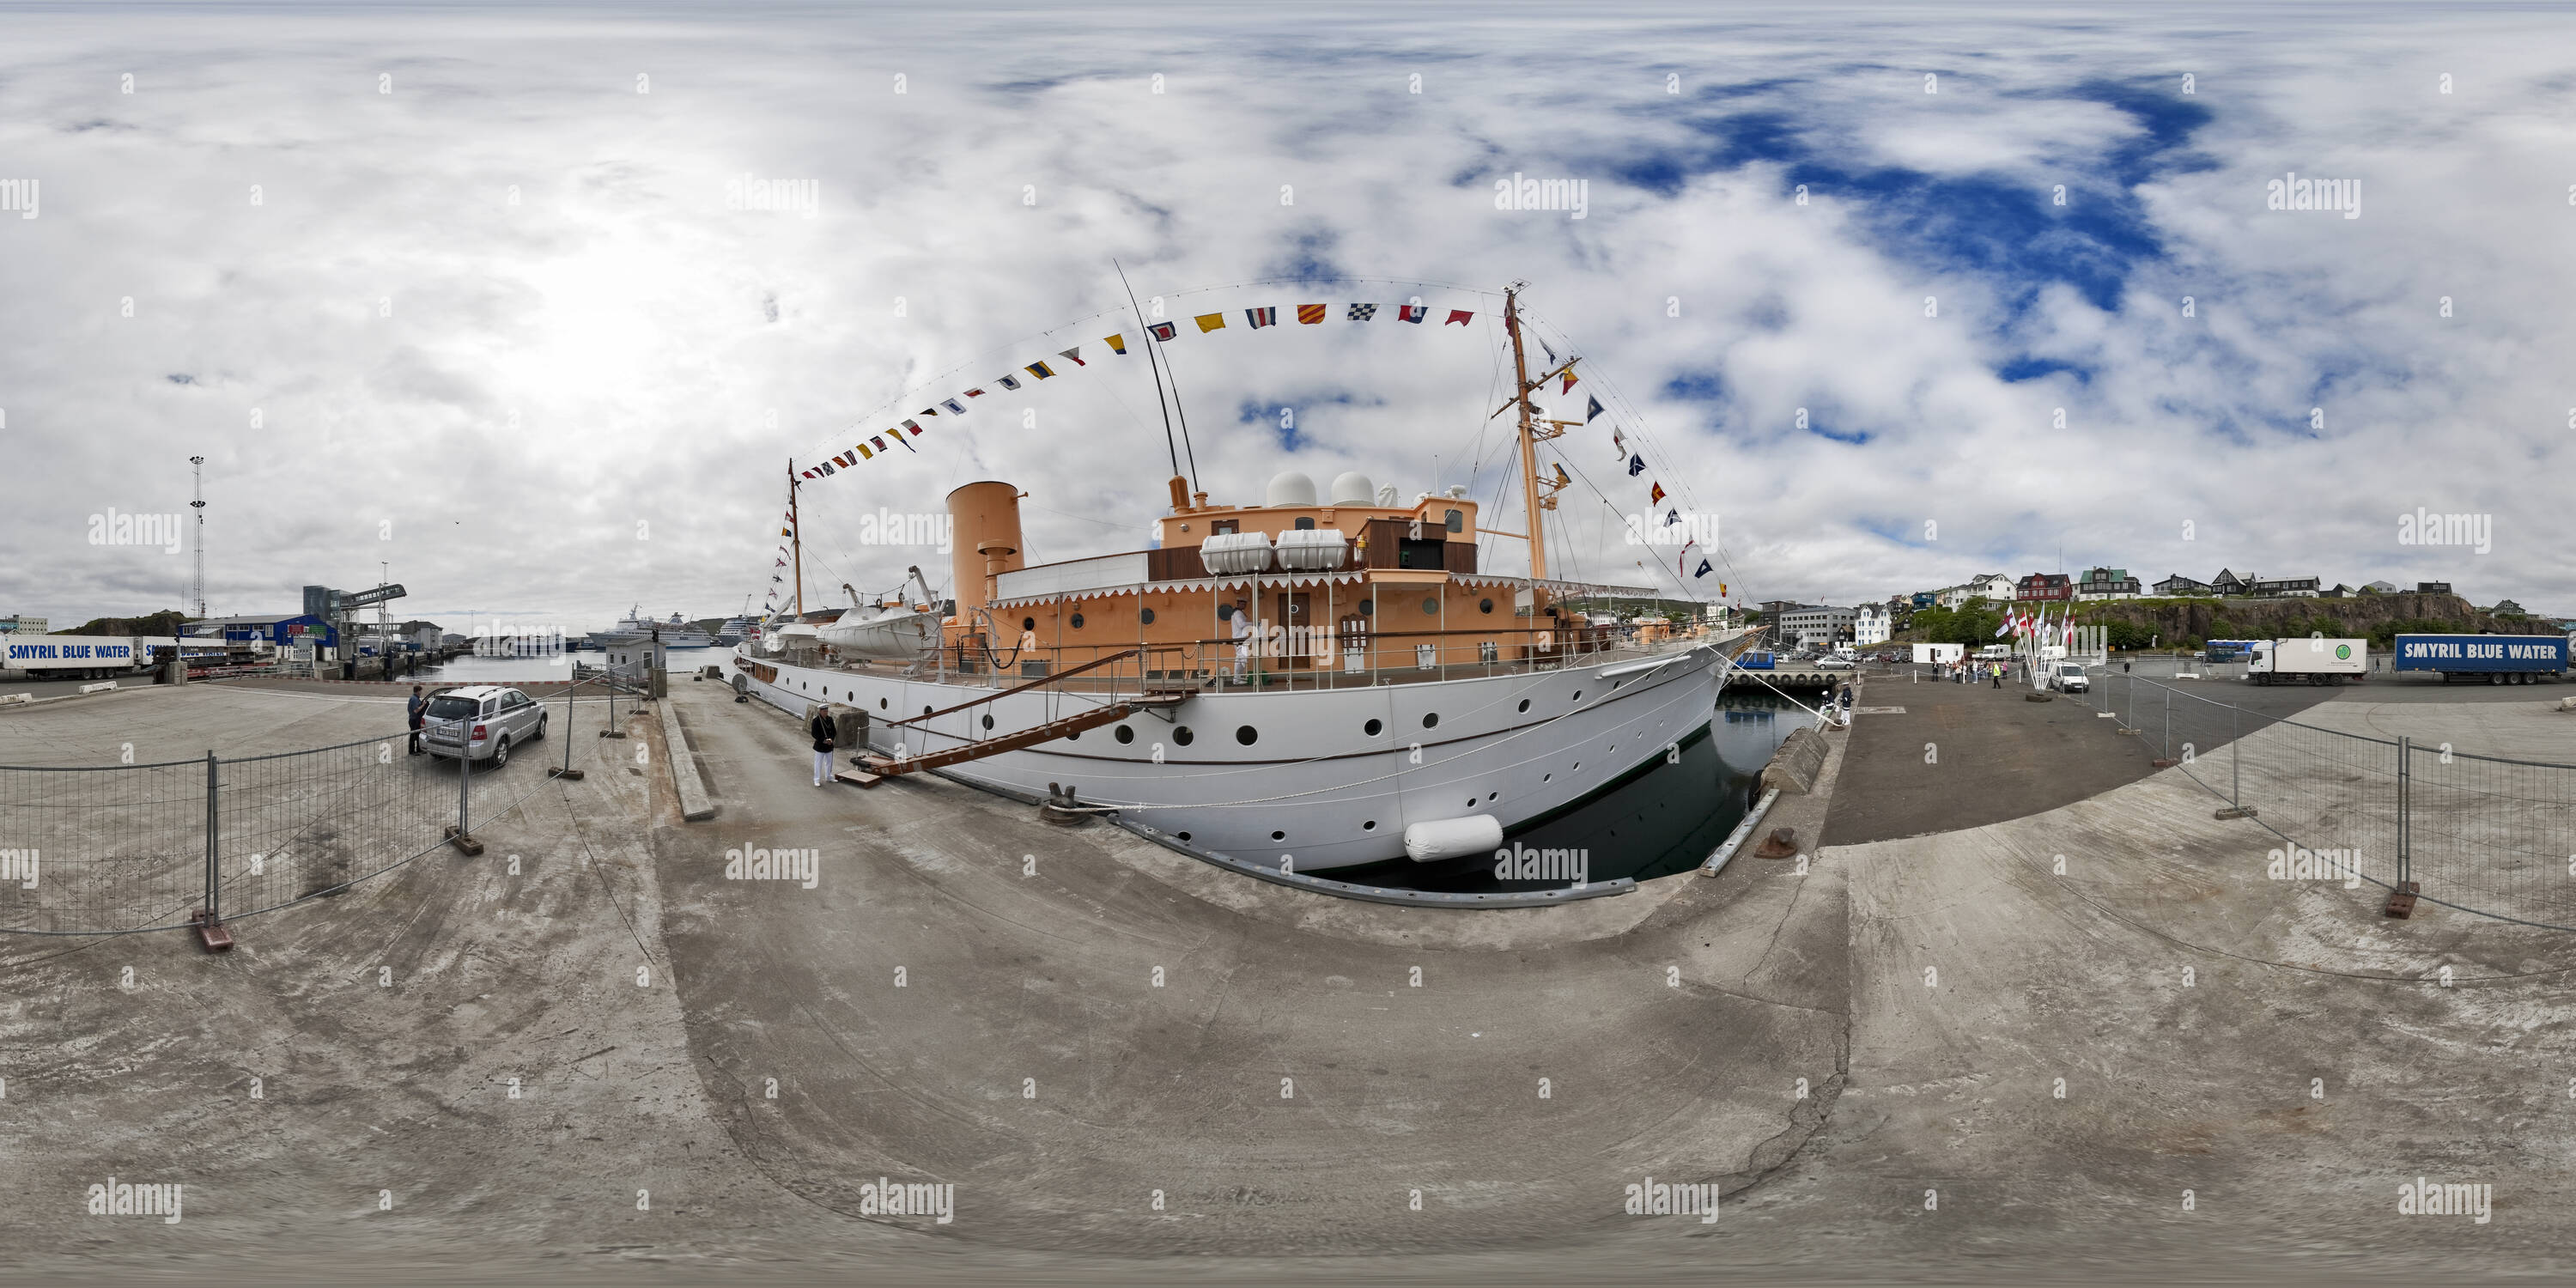 360 degree panoramic view of The Royal Yacht Dannebrog Visiting Torshavn